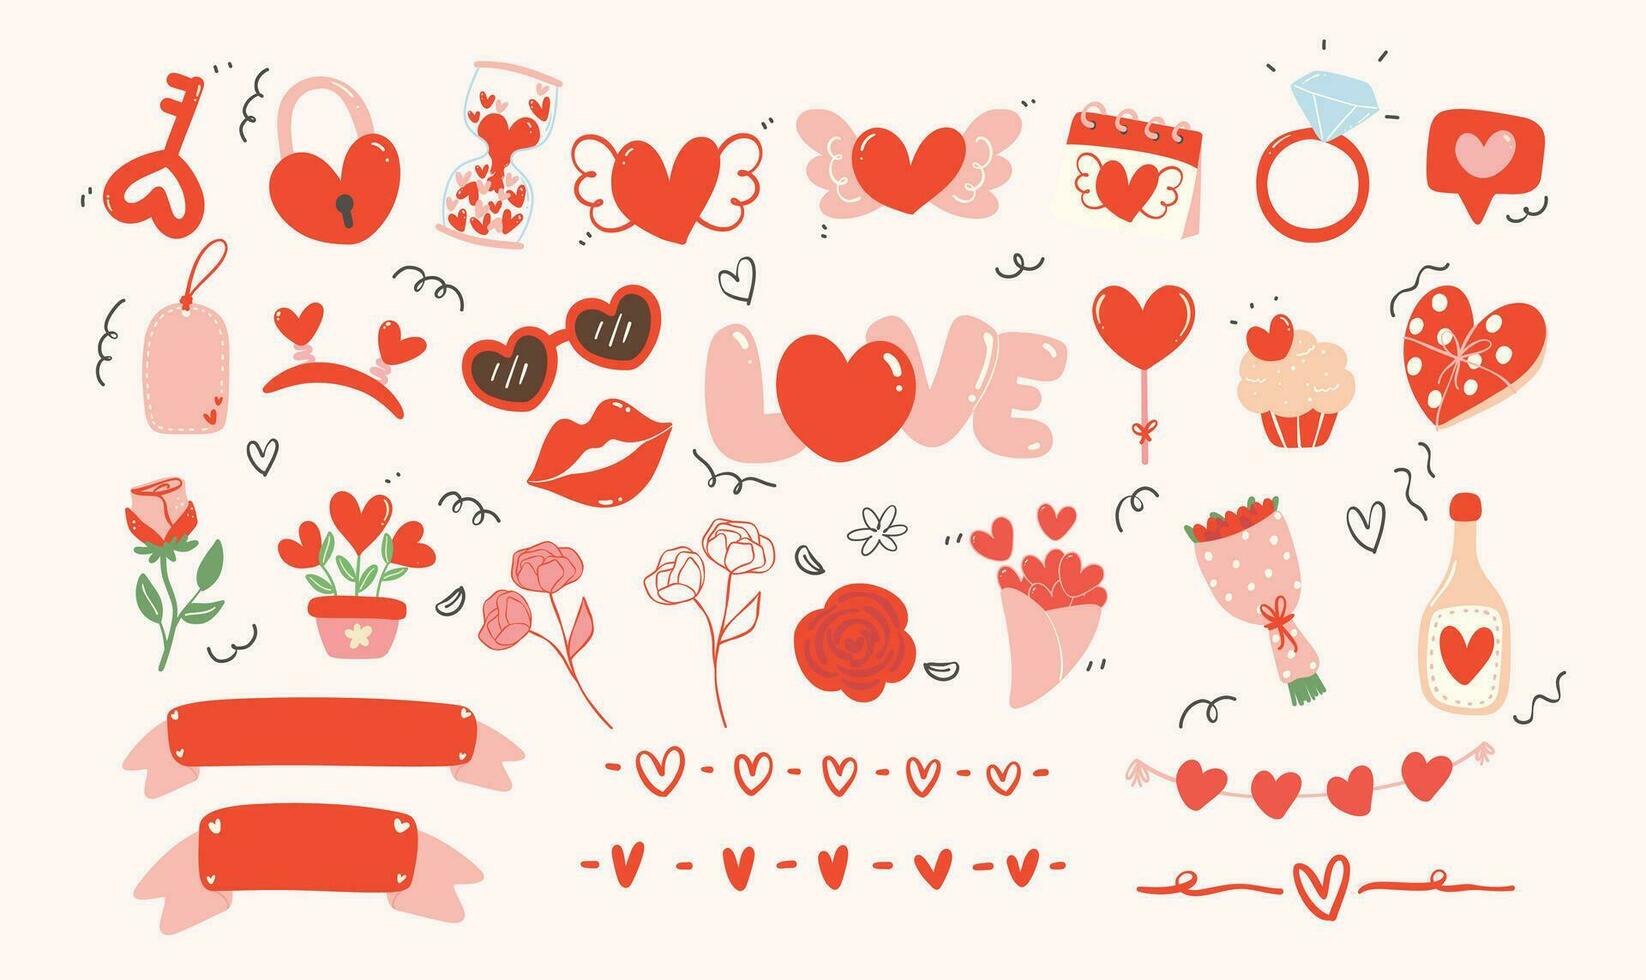 linda kawaii enamorado elemento. mano dibujado ilustración en rojo y rosado tema presentando adorable corazones y decorativo elementos vector